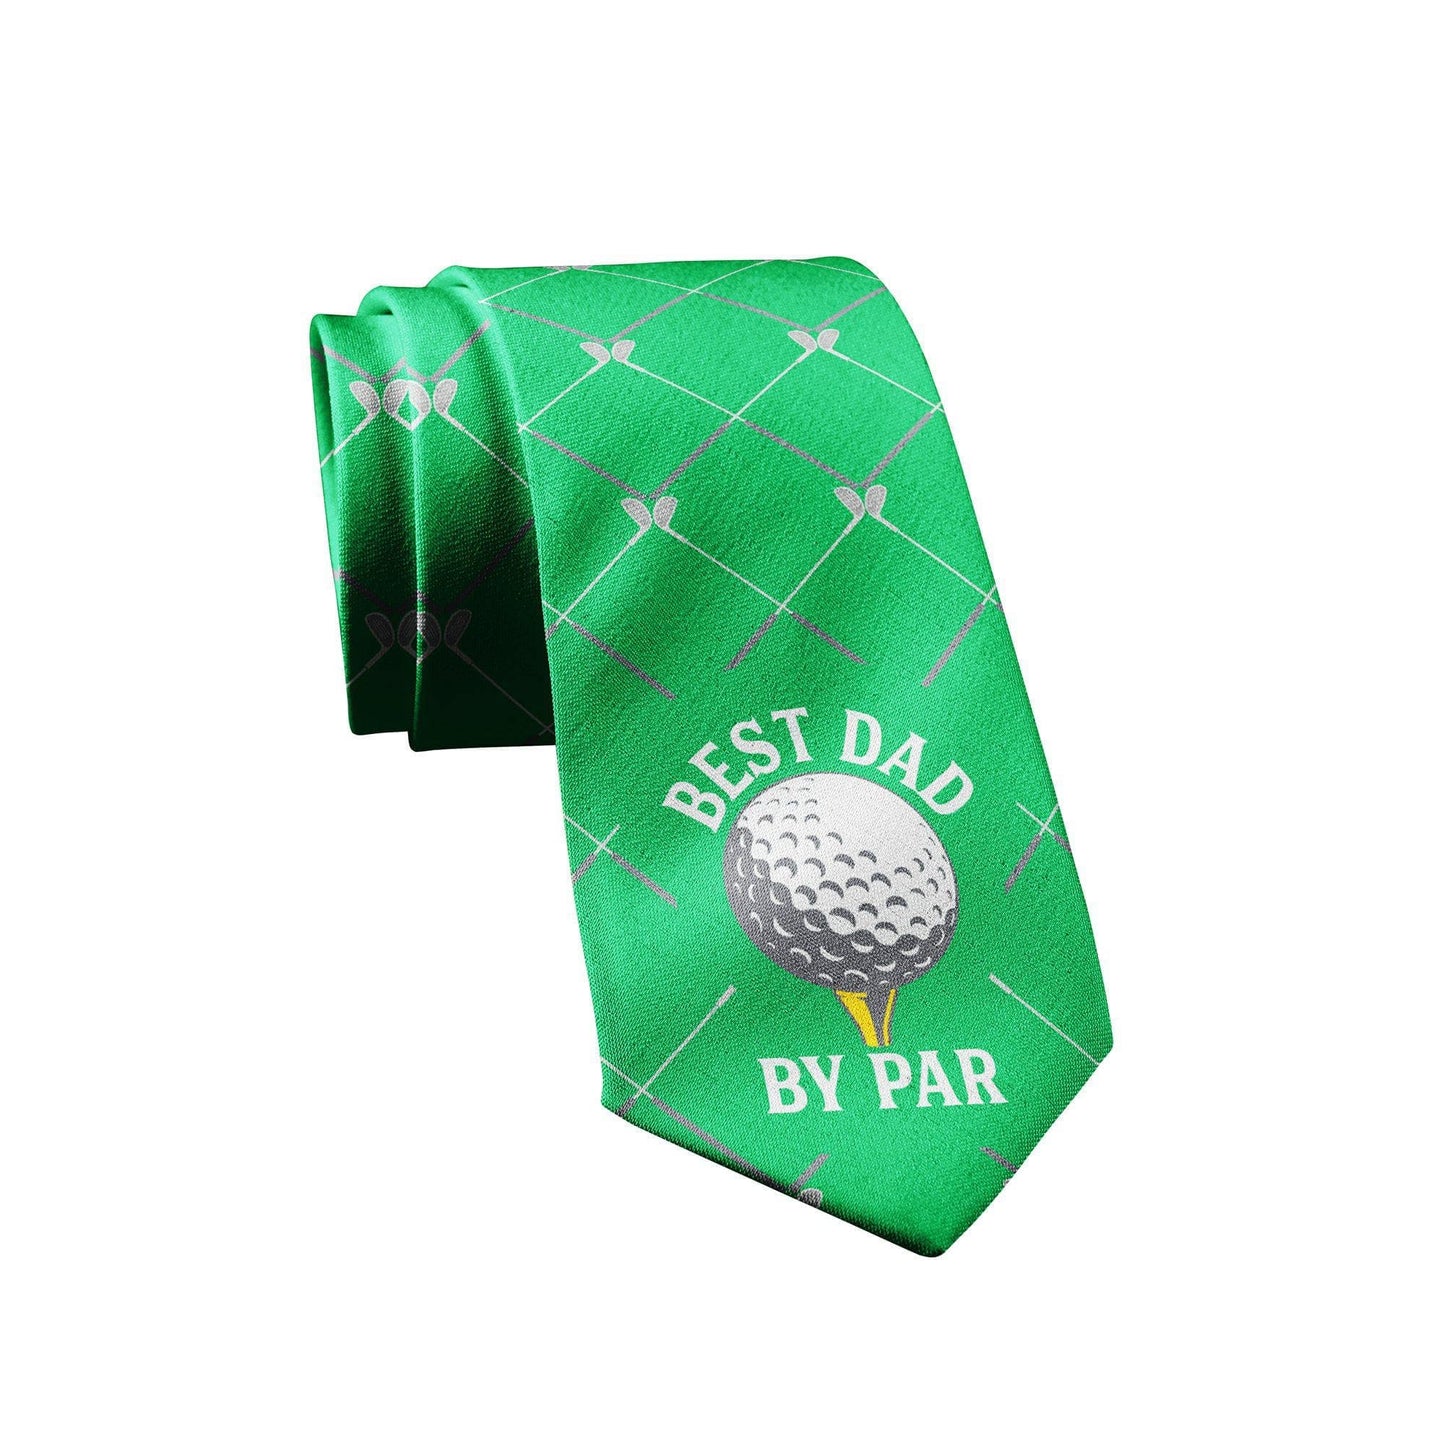 Best Dad By Par Neck Tie Golfing Necktie Gift for Golf: One Size / Green